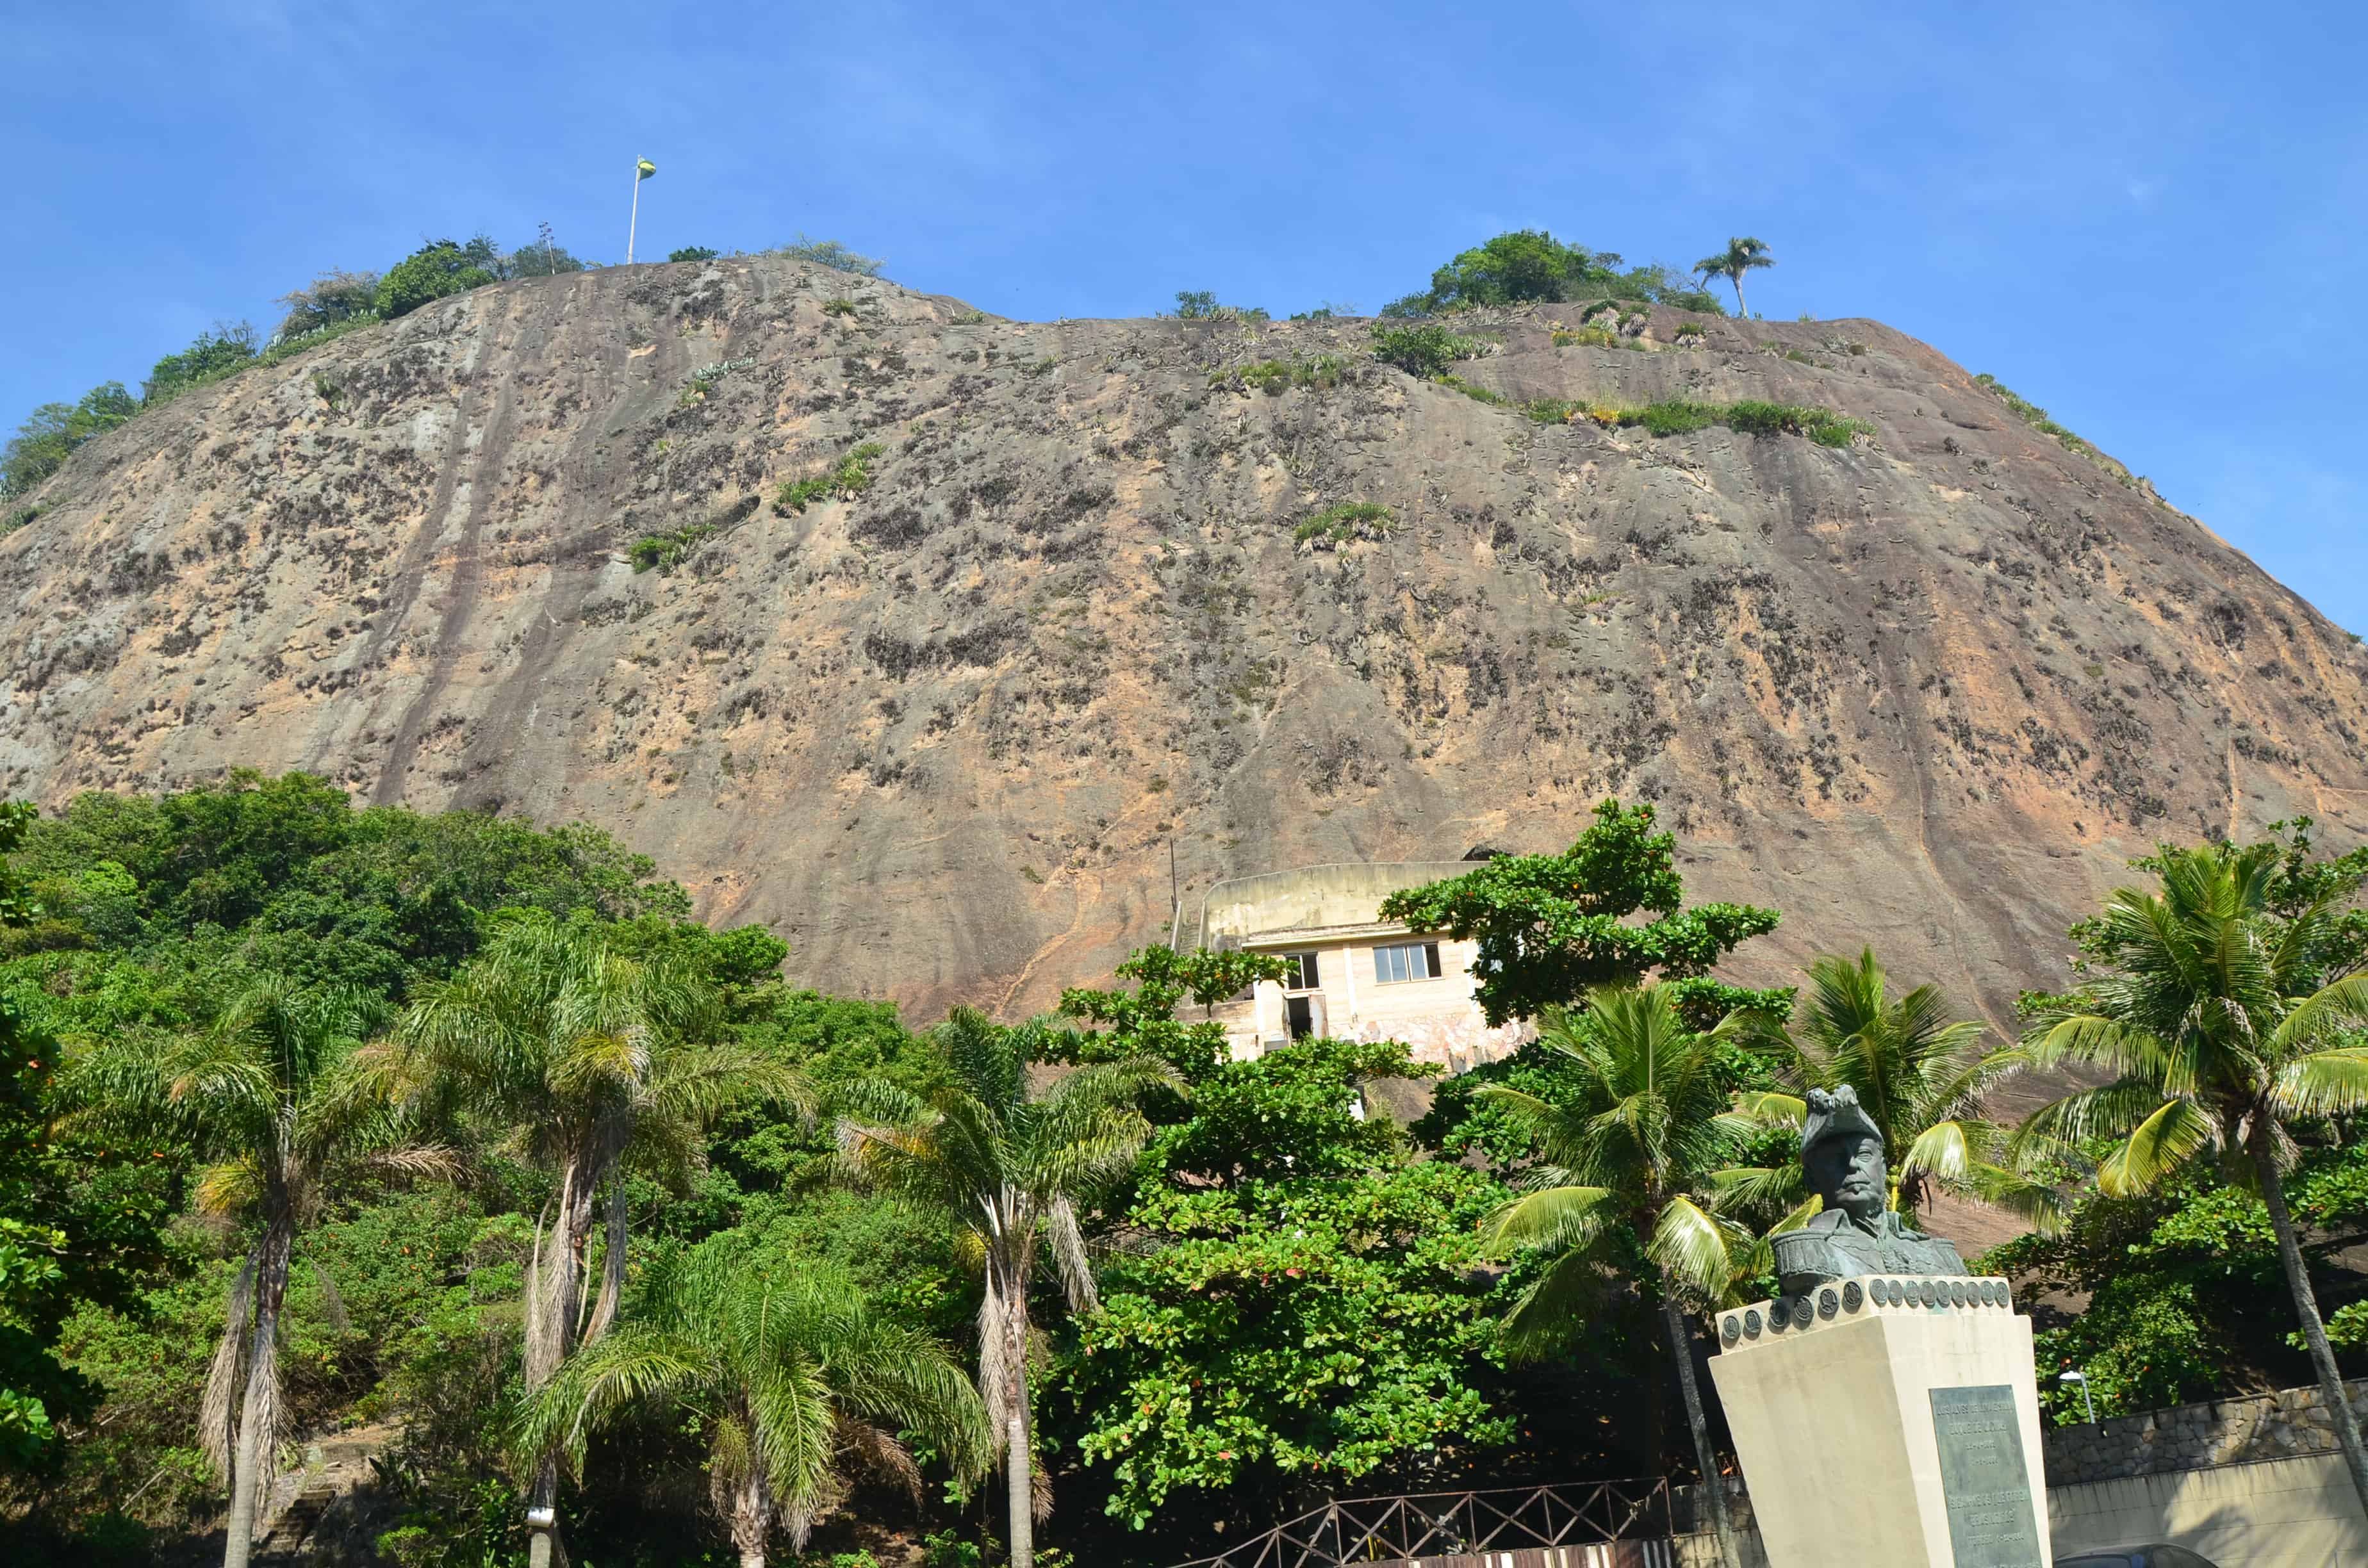 Morro do Leme in Rio de Janeiro, Brazil